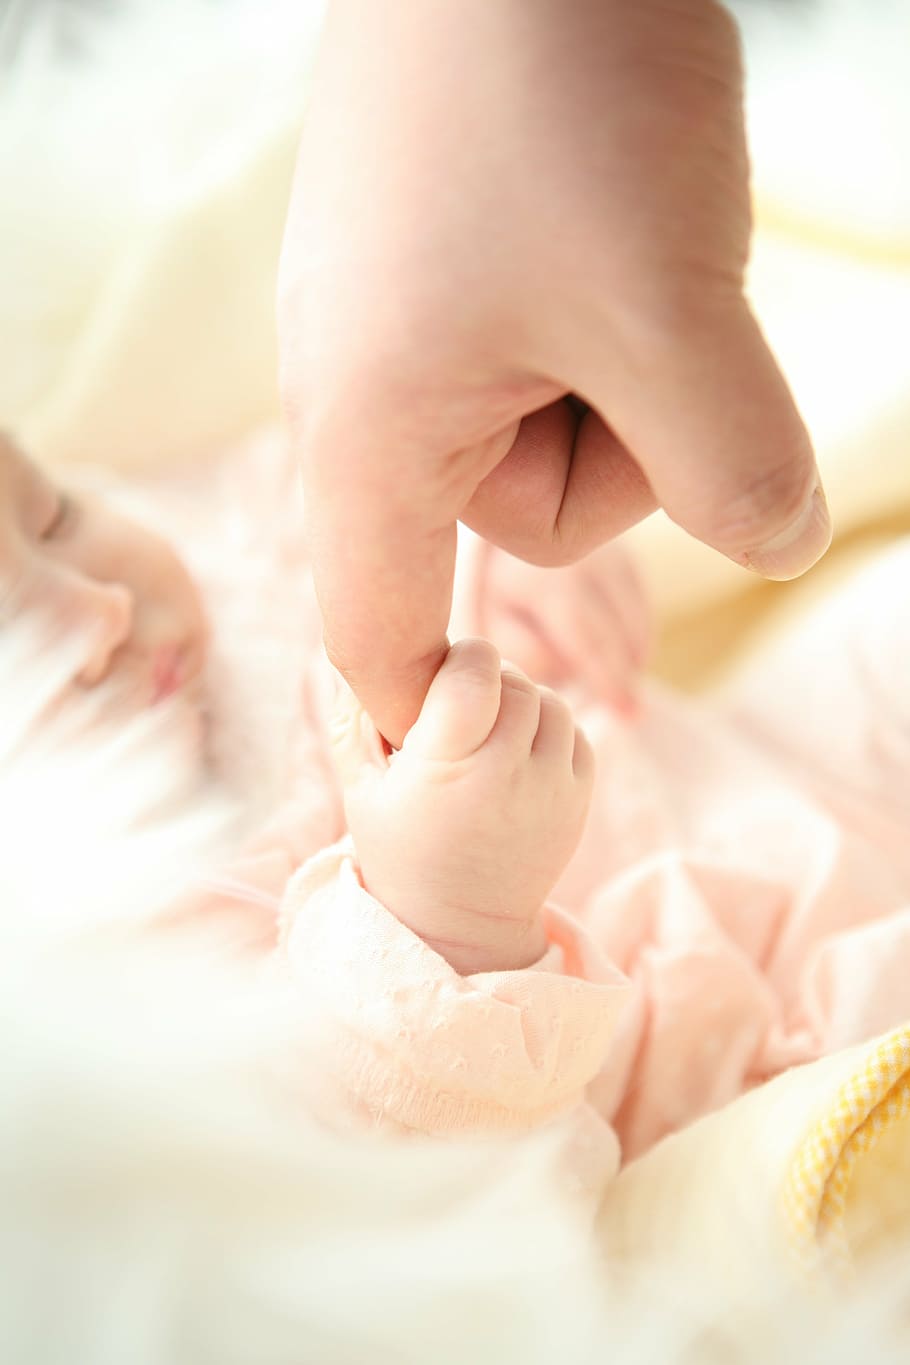 赤ちゃん, 持つ, 人差し指, 人, 手, お父さん, 子供, 人間の手, クローズアップ, 小